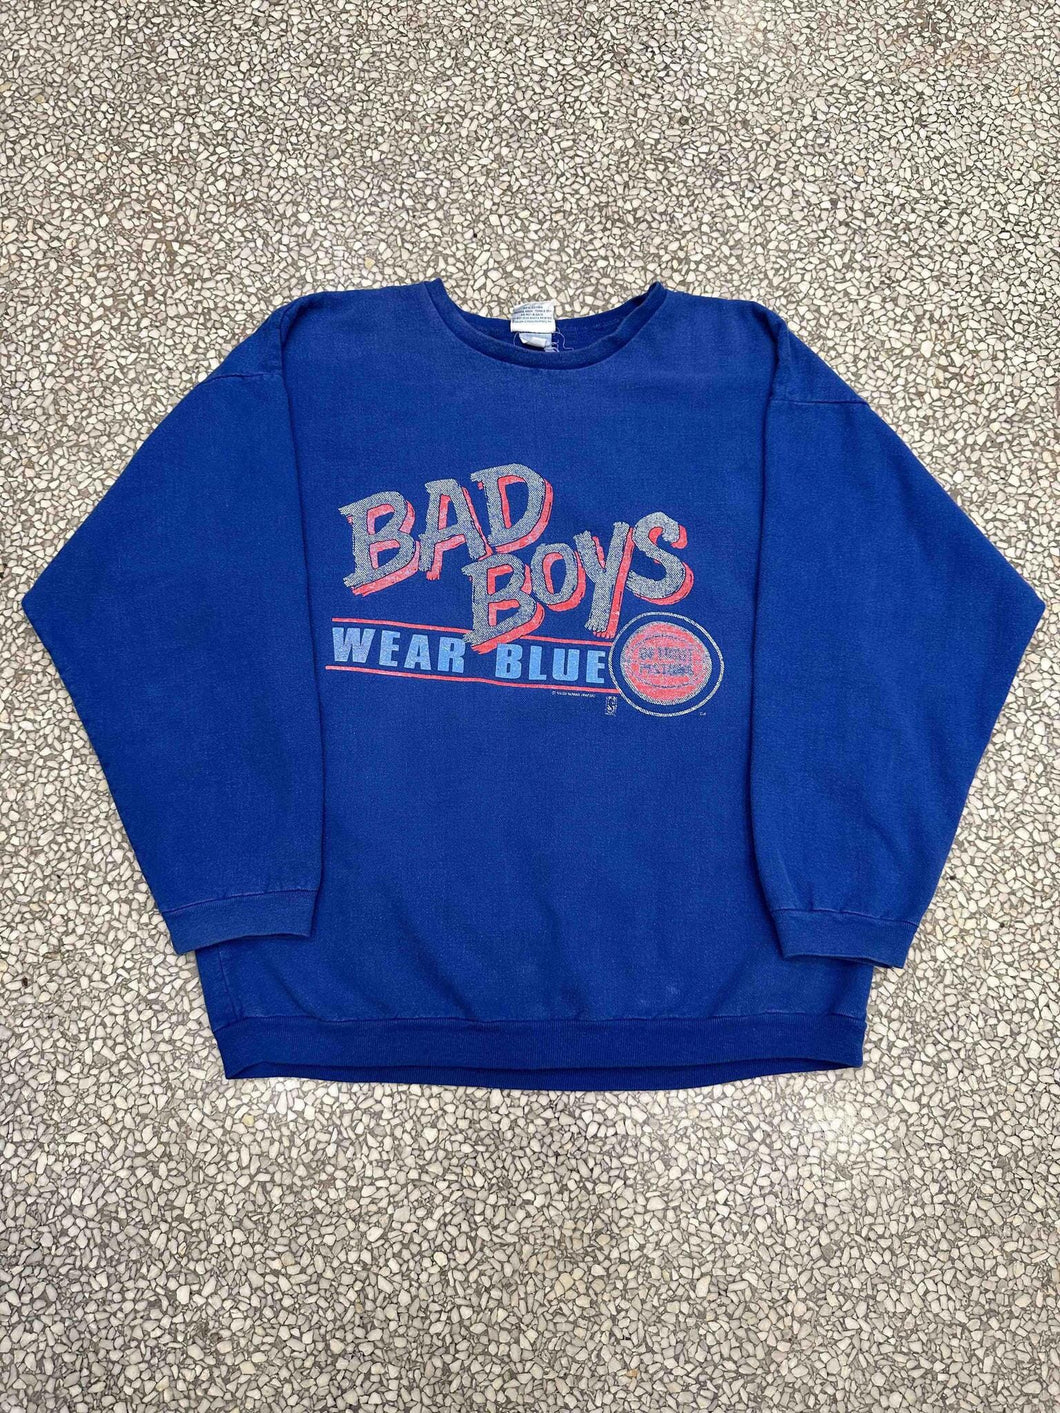 Detroit Pistons Vintage 90s Bad Boys Wear Blue Crewneck Faded Blue ABC Vintage 